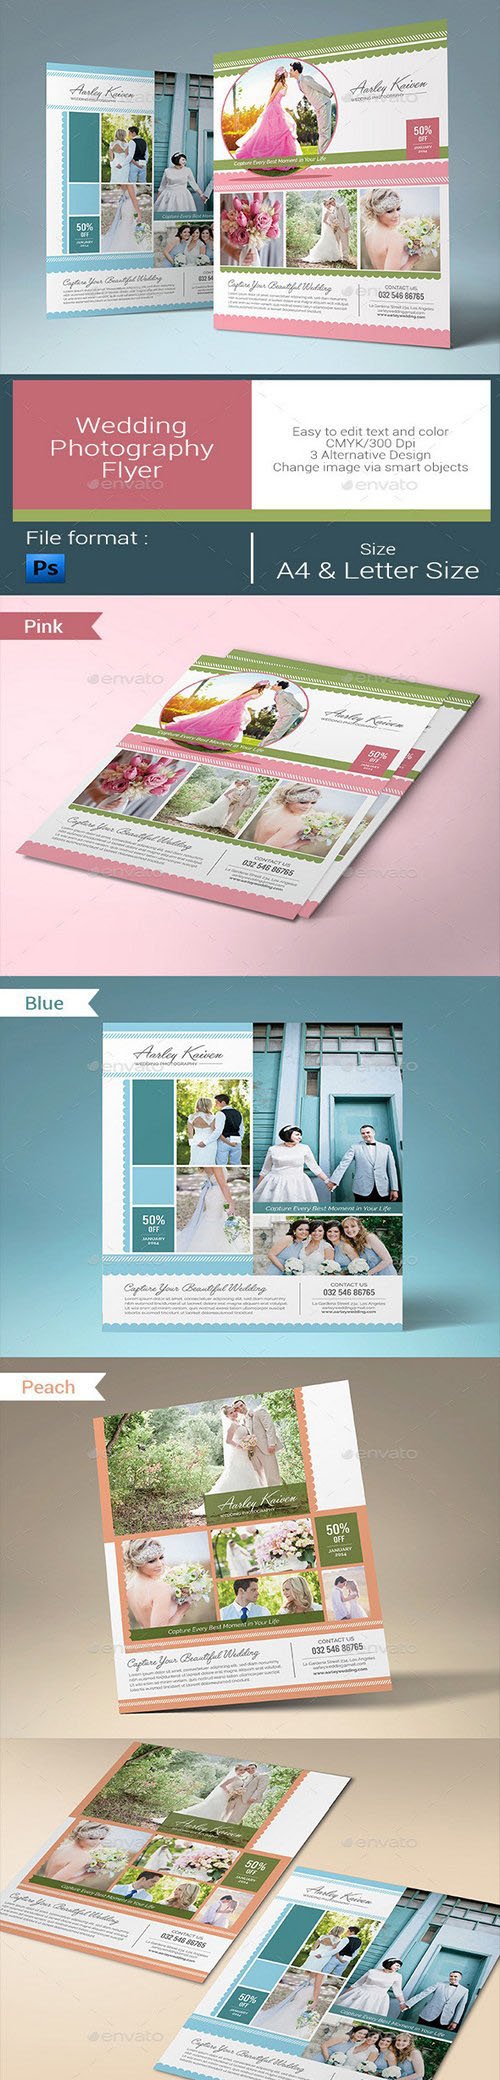 Wedding Photography Flyer 10347607